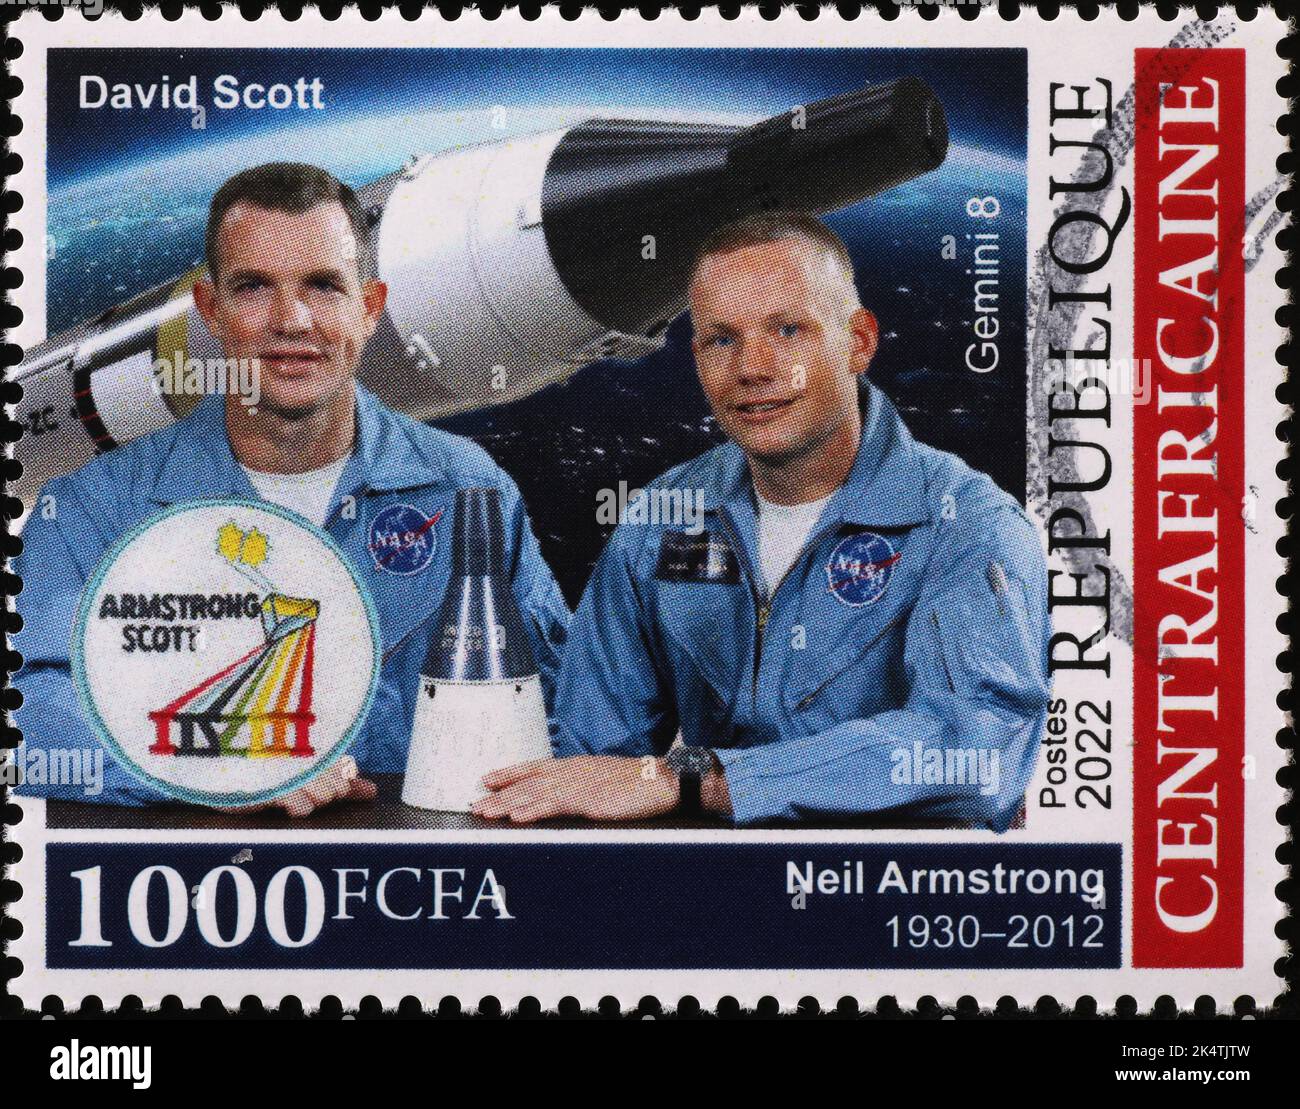 Los astronautas Neil Amstrong y David Scott en el sello postal Foto de stock